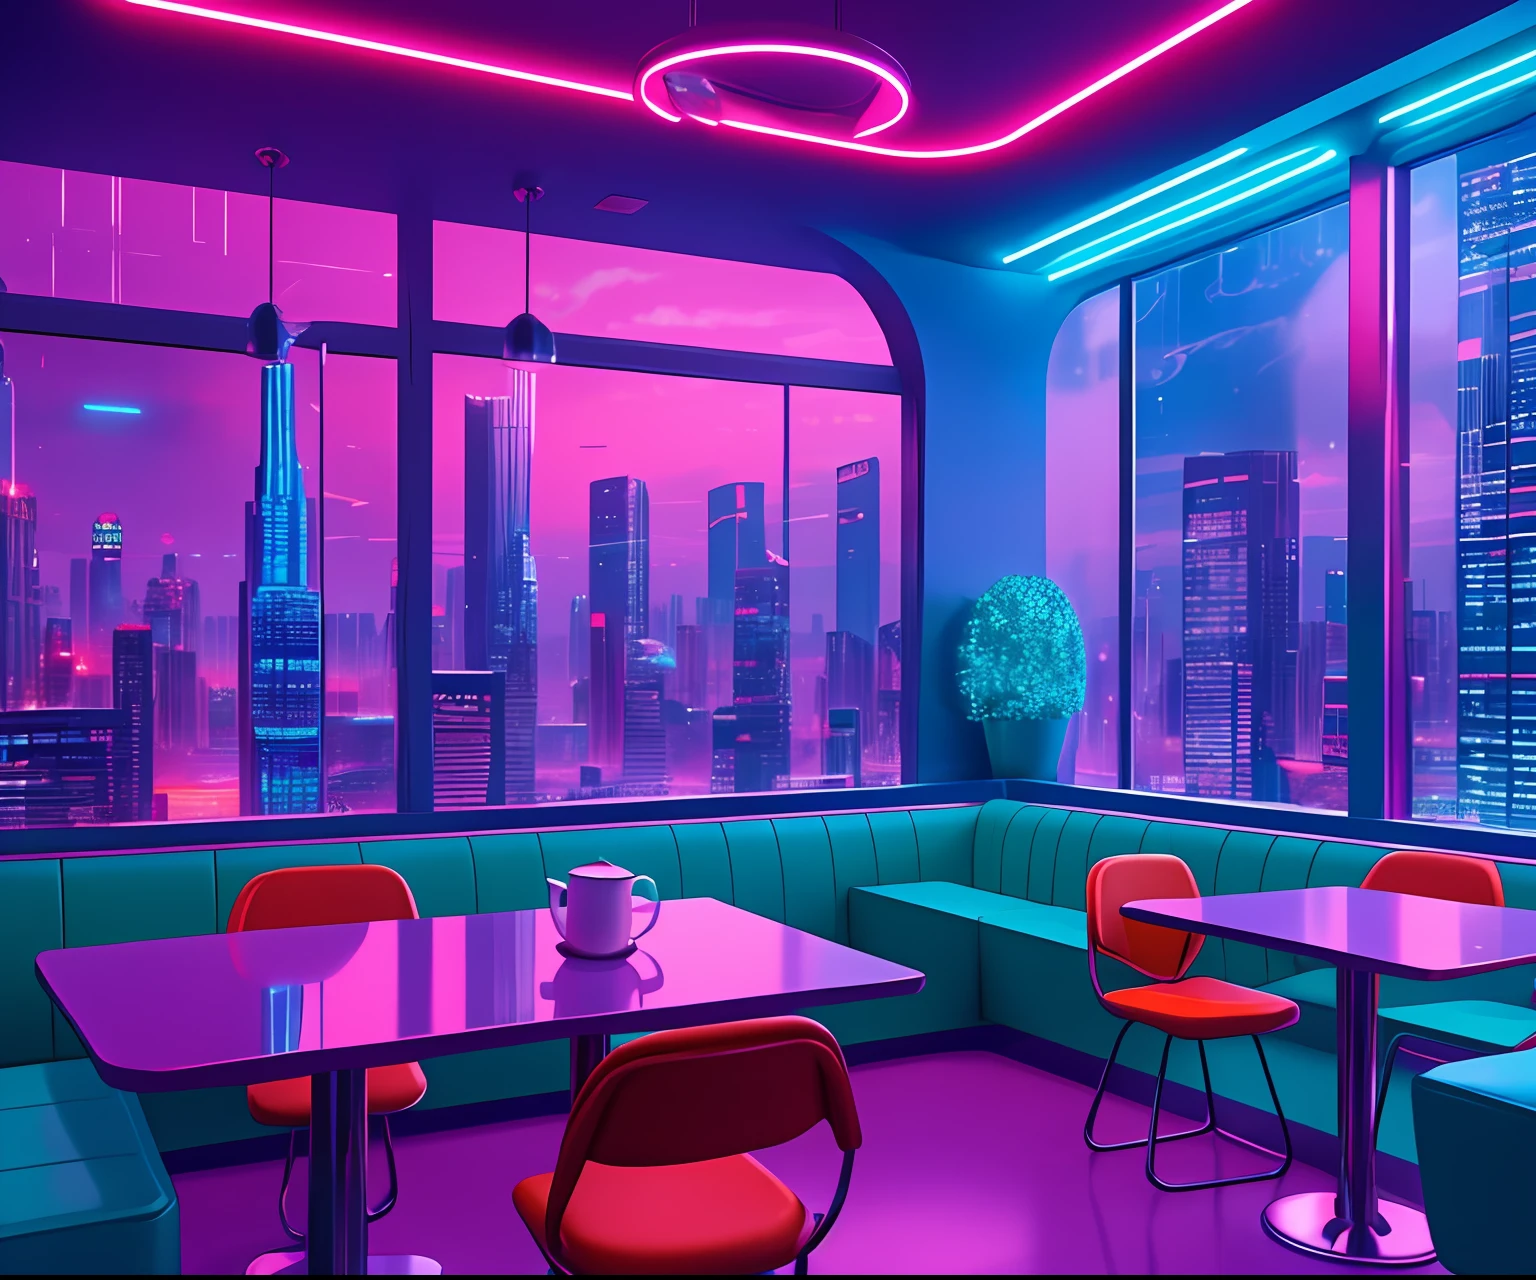 ((Meisterwerk)), (ultra-detailliert), (komplizierte Details), (8k hochauflösende CGI-Kunst), Create an image of a small cyberpunk (Café) retro-futuristischer und realistischer Vaporwave über Nacht. Eine der Wände sollte ein großes Fenster mit einem belebten, farbenfrohes und detailliertes Stadtbild (cyberpunk), Synthwave, Neon. Die Stadt soll einen futuristischen Stil mit vielen Farben haben, Neon lights, Schilder und Gebäude in verschiedenen Größen. Das Stadtbild sollte extrem detailliert sein und eine Tiefenschärfe aufweisen. Die Stadt sollte optisch sehr interessant sein und viele kleine Details aufweisen. Verwenden Sie stimmungsvolle Beleuchtung und Ambiente, um Tiefe zu erzeugen und das Gefühl einer geschäftigen futuristischen Stadt vor dem Fenster hervorzurufen. Achten Sie besonders auf Details wie komplizierte, miete augen, und Schlafzimmerdetails im 90er-Stil. Kamera: Cafeteria mit Tisch und Fenster. Das Fenster sollte der Mittelpunkt des Bildes sein. Beleuchtung: Verwenden Sie atmosphärische und volumetrische Beleuchtung, um die Details der Stadtlandschaft hervorzuheben. The cafeteria should be illuminated by the Neon lights of the urban landscape.